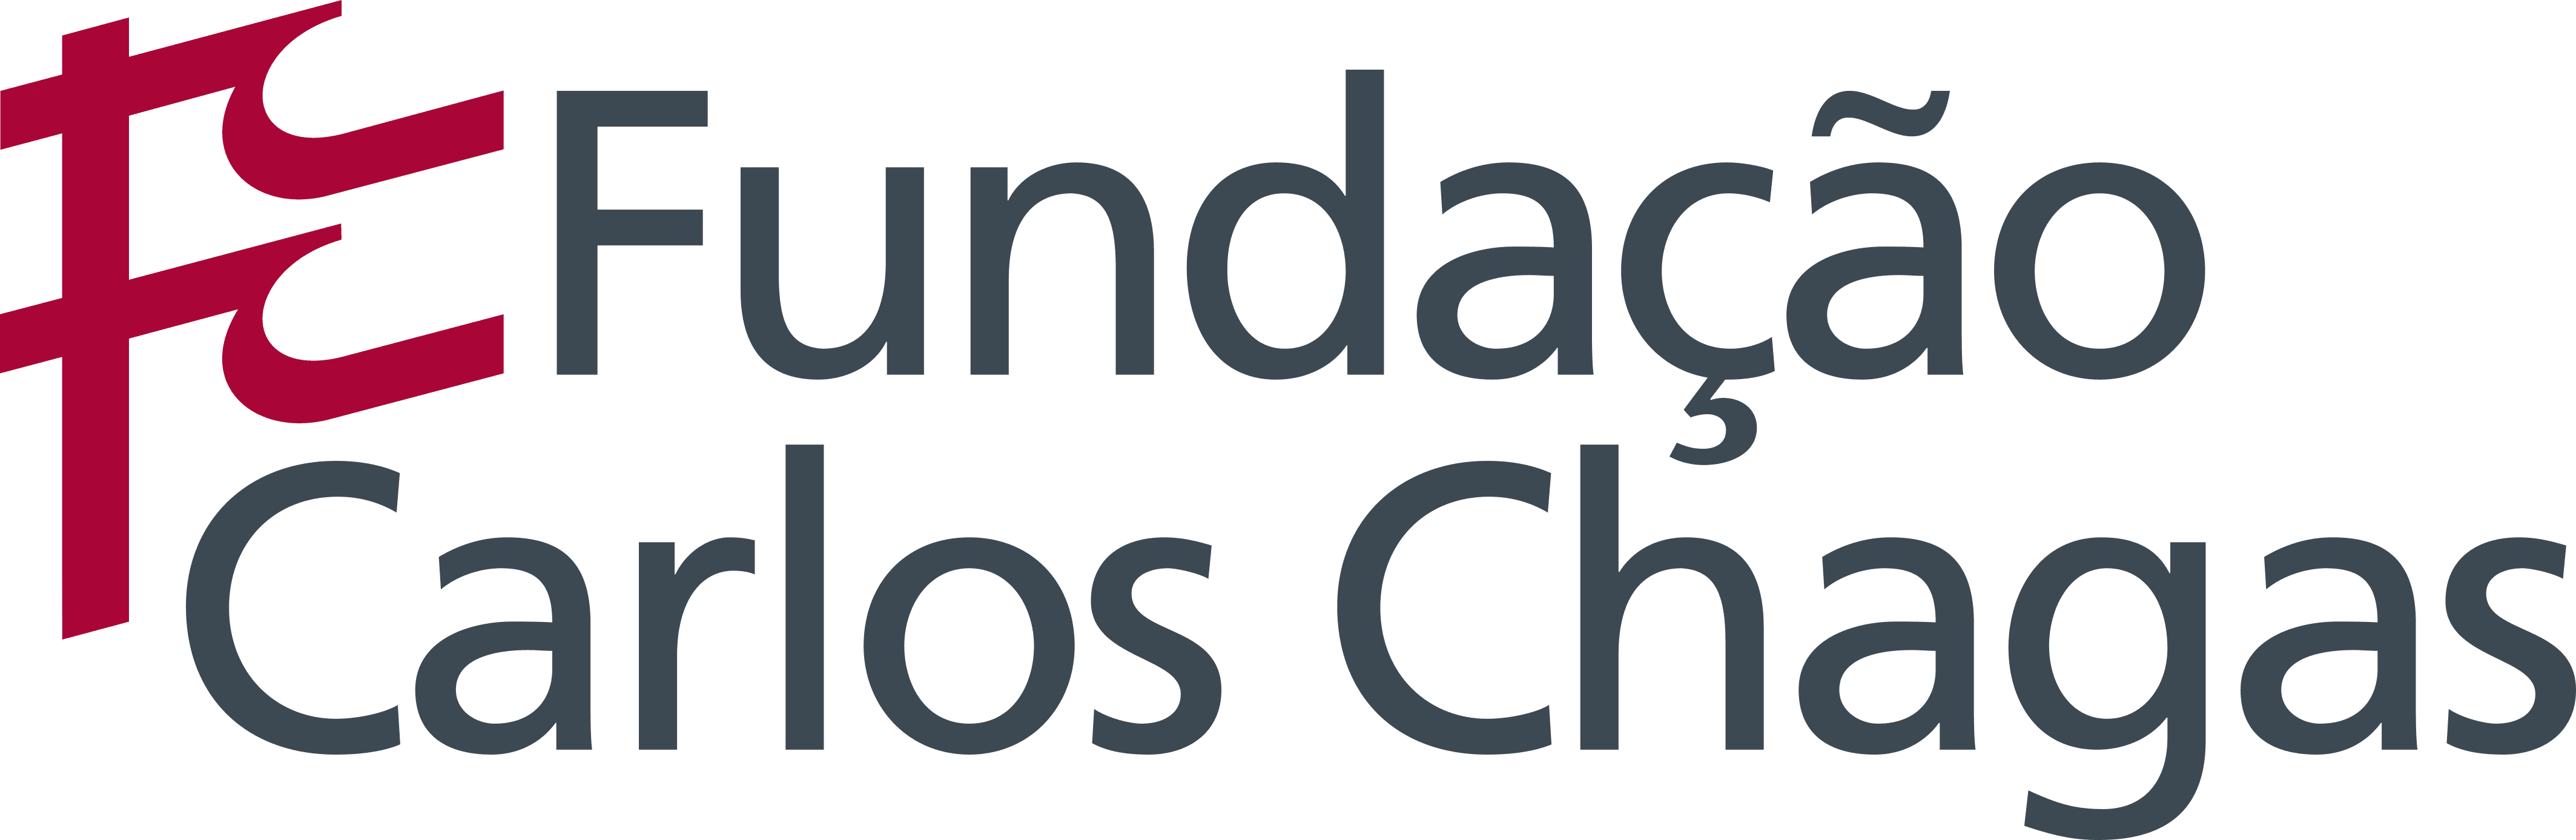 Fundação Carlos Chagas (FCC)